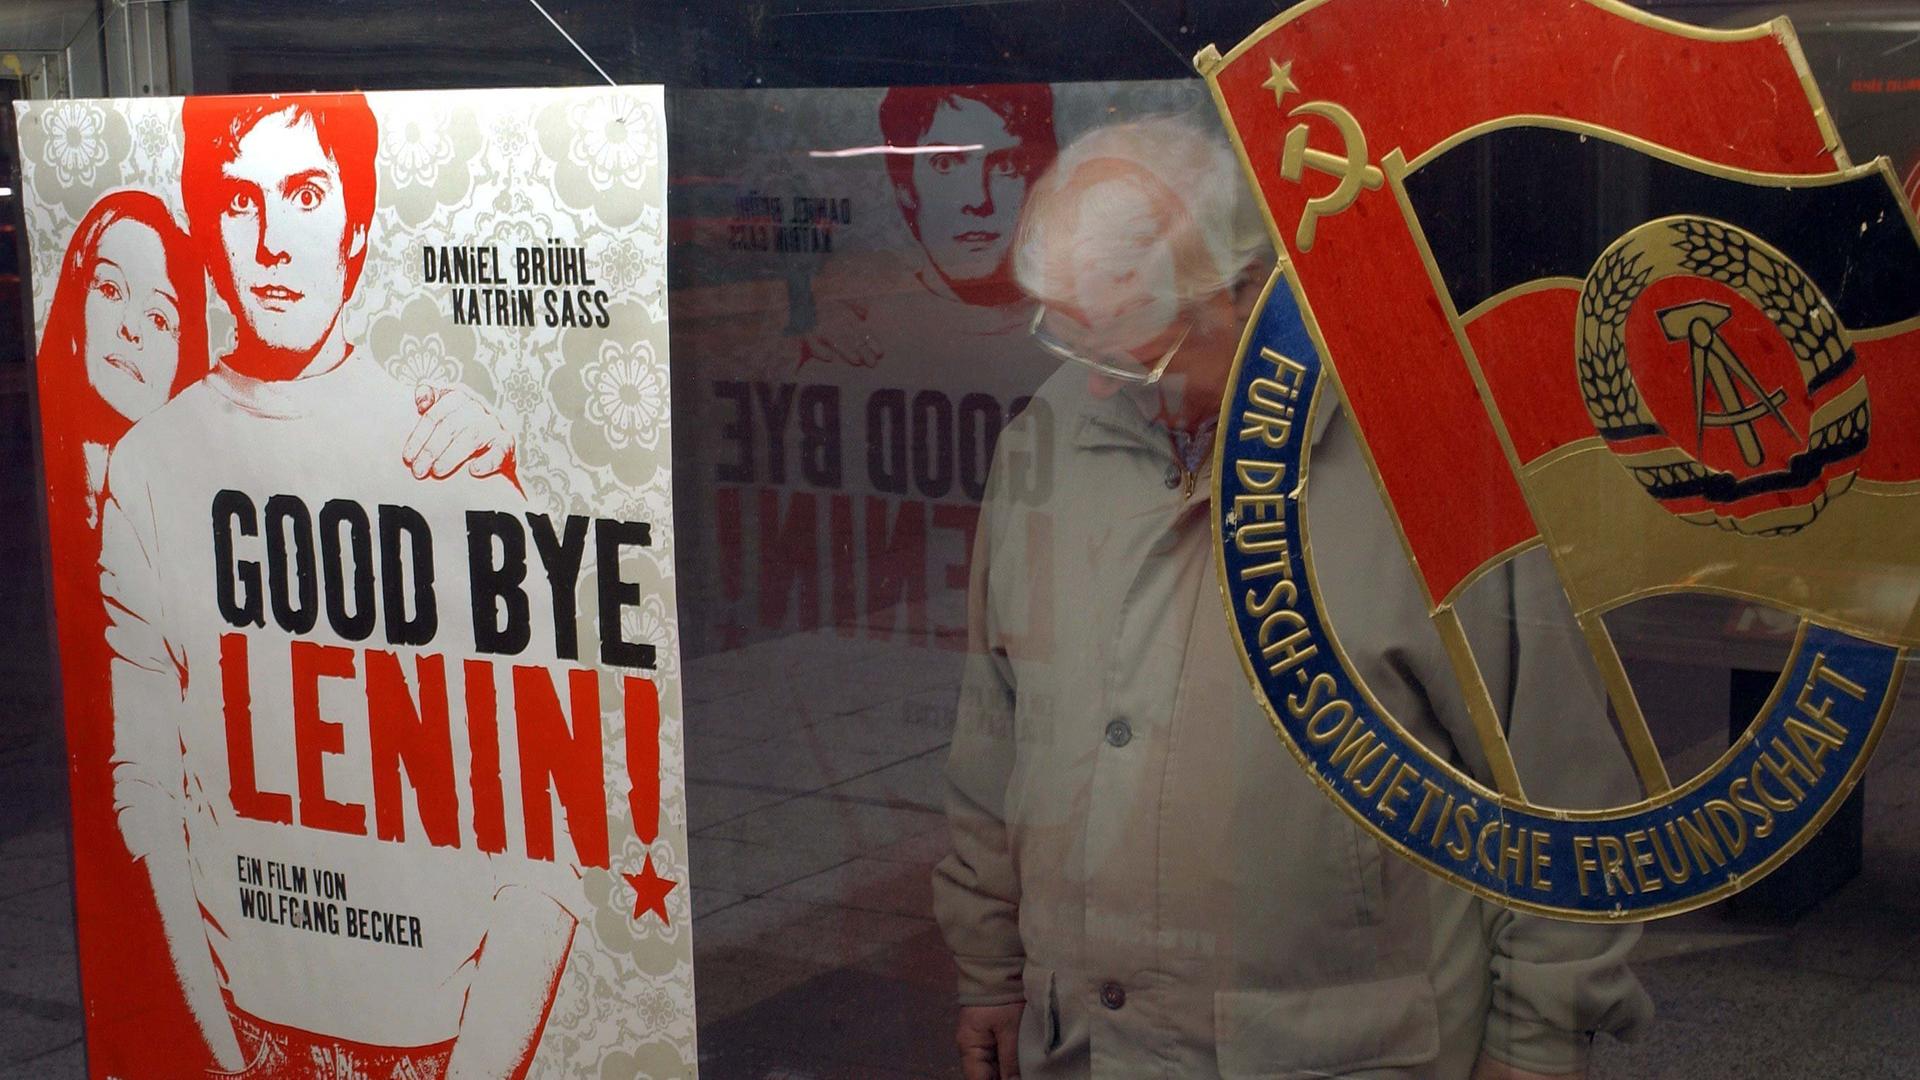 In einem Schaukasten des Kinos International an der Karl-Marx-Allee in Berlin, wirbt im Februar 2003 ein Plakat für den Film "Good Bye, Lenin!".